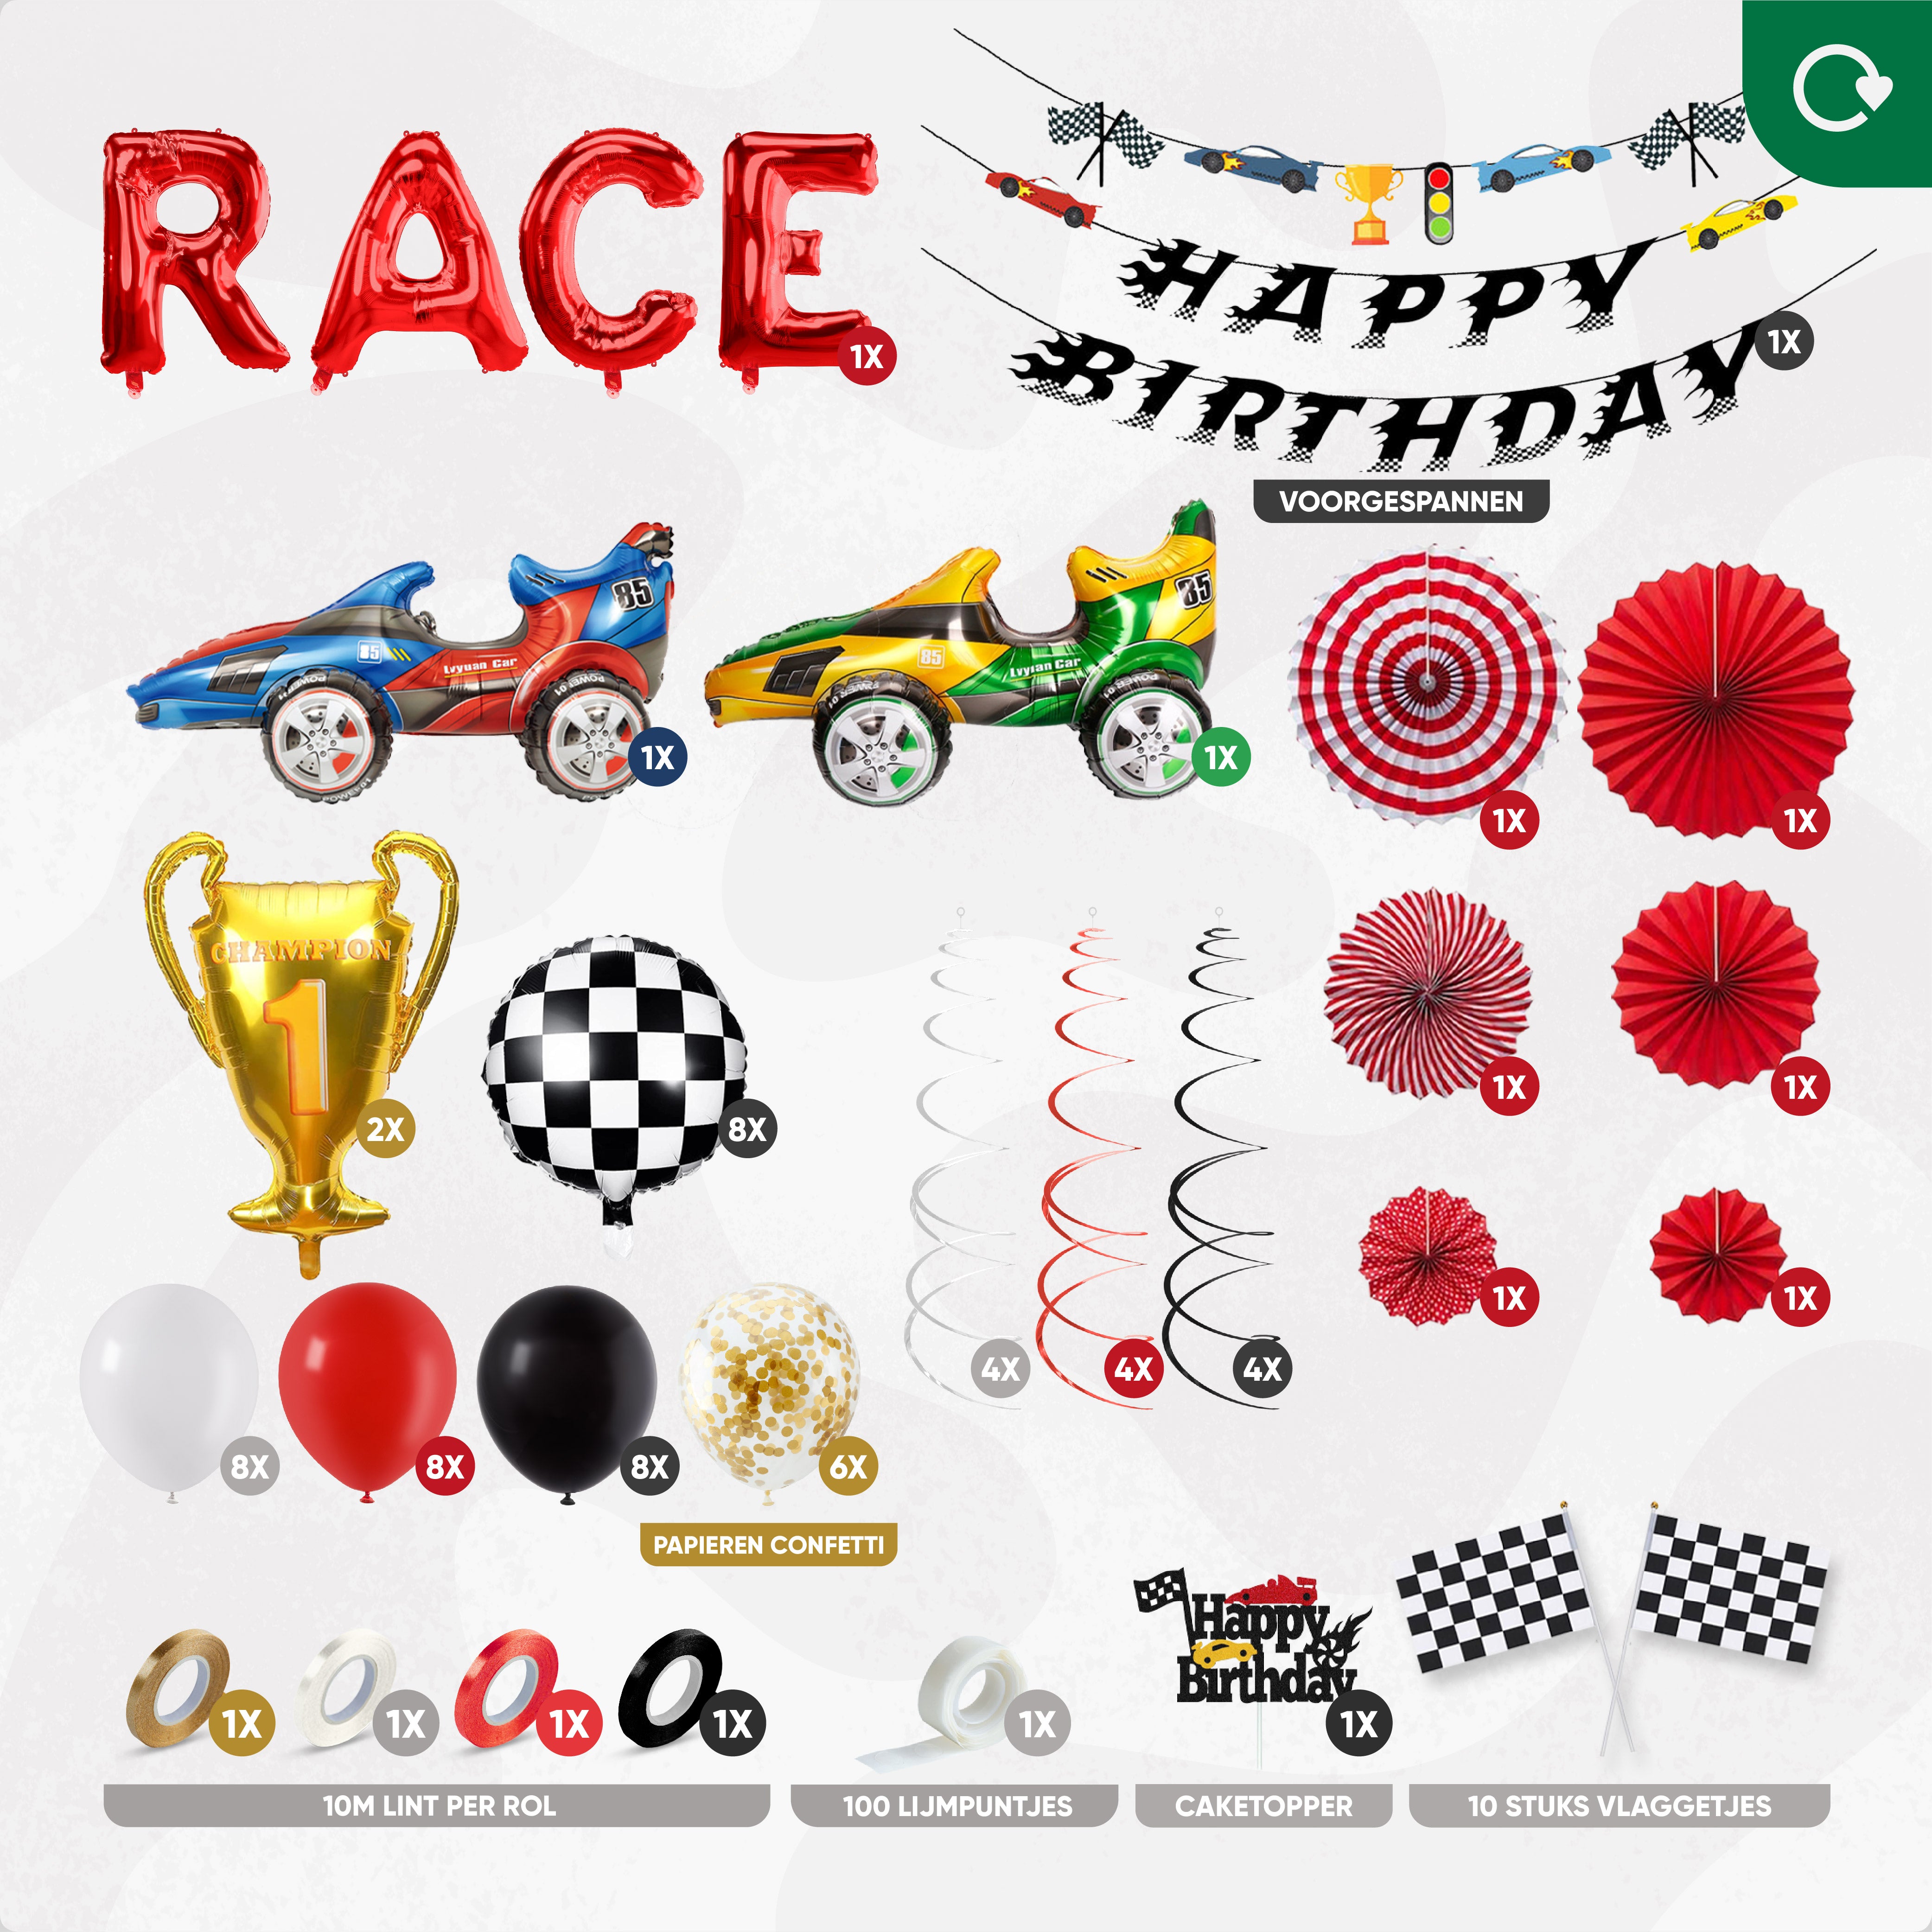 Formule 1 Race Verjaardag Feestpakket